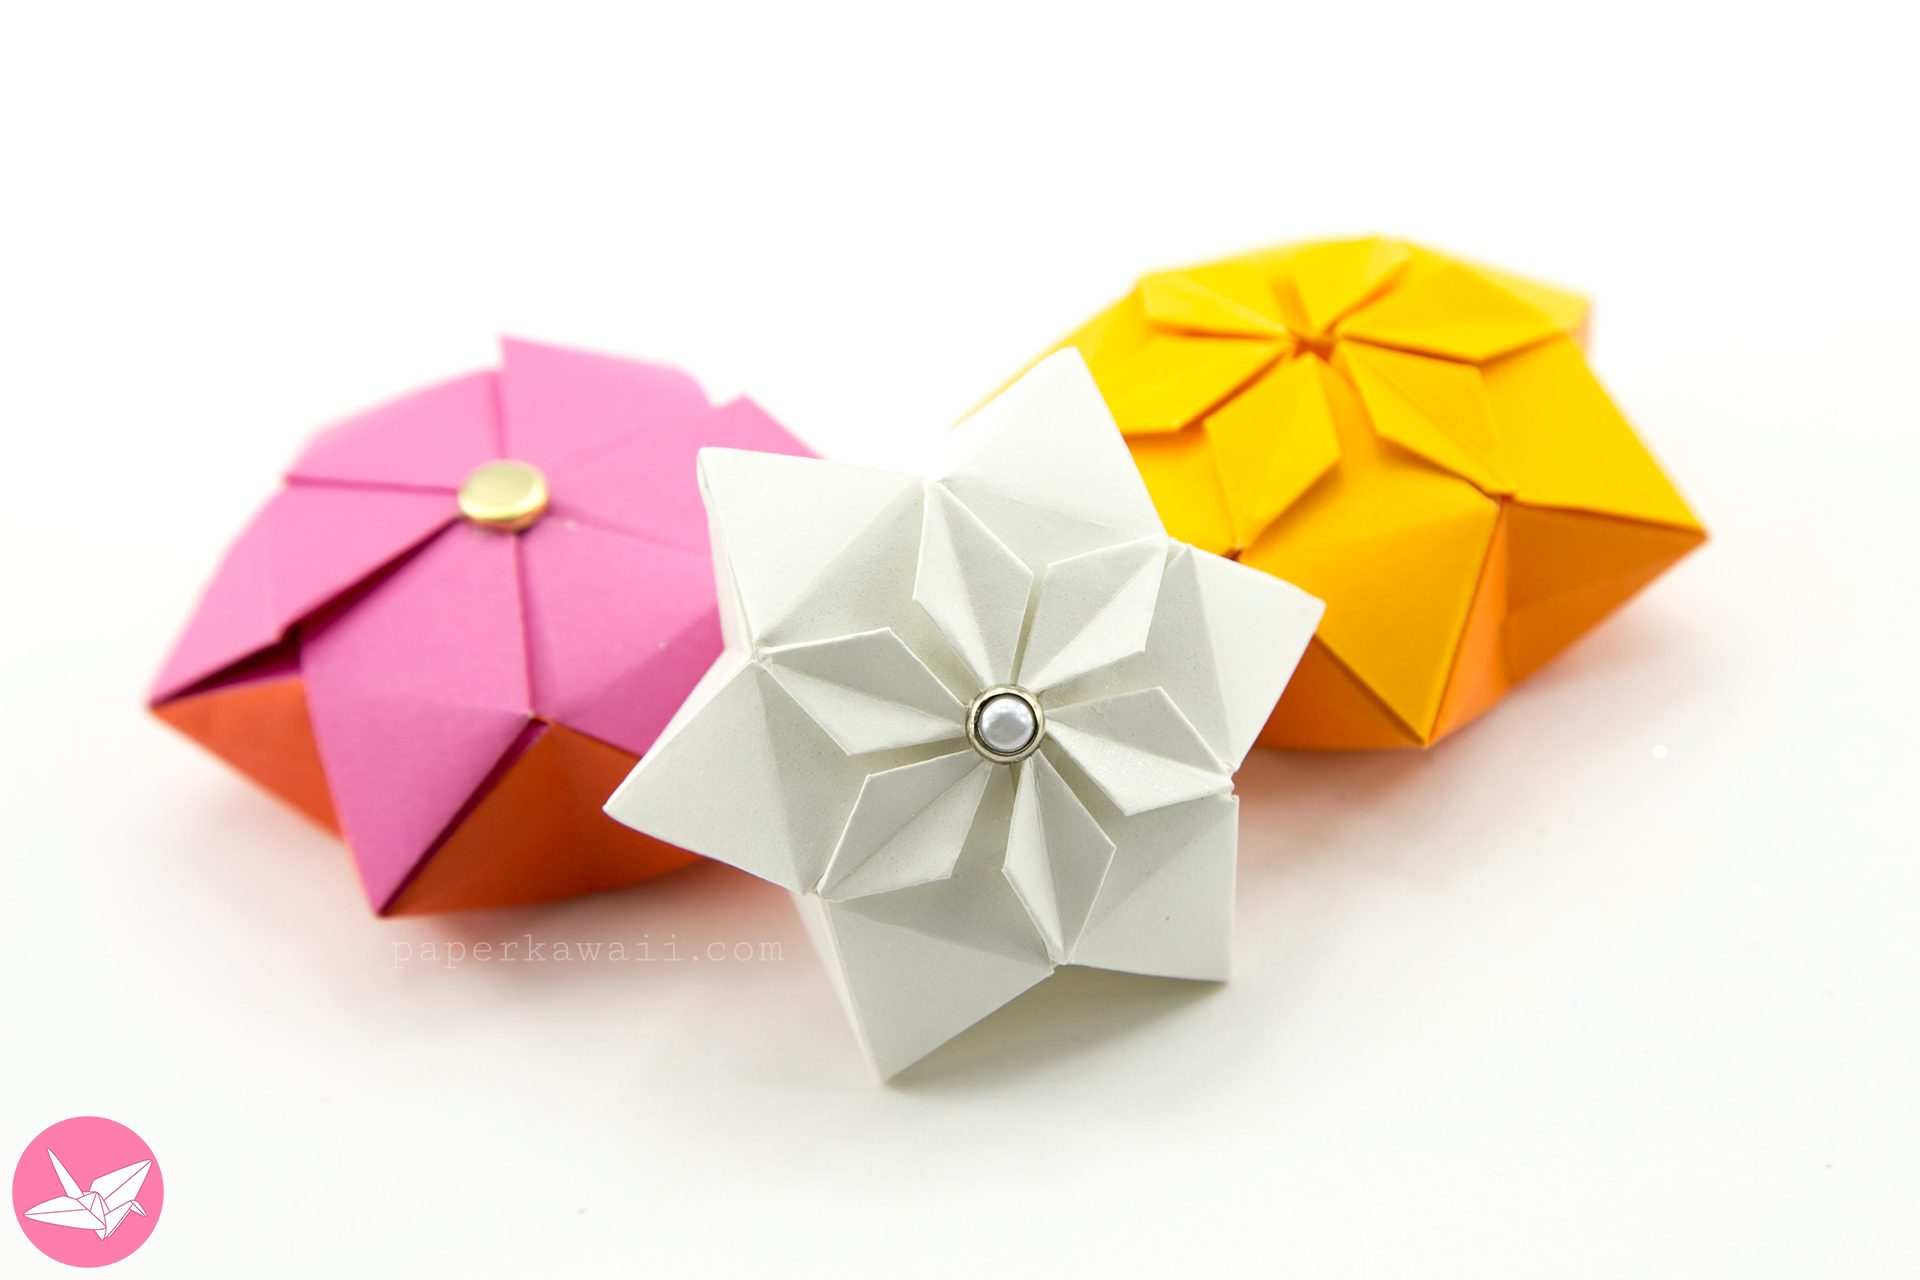 Origami Hexagonal Puffy Star